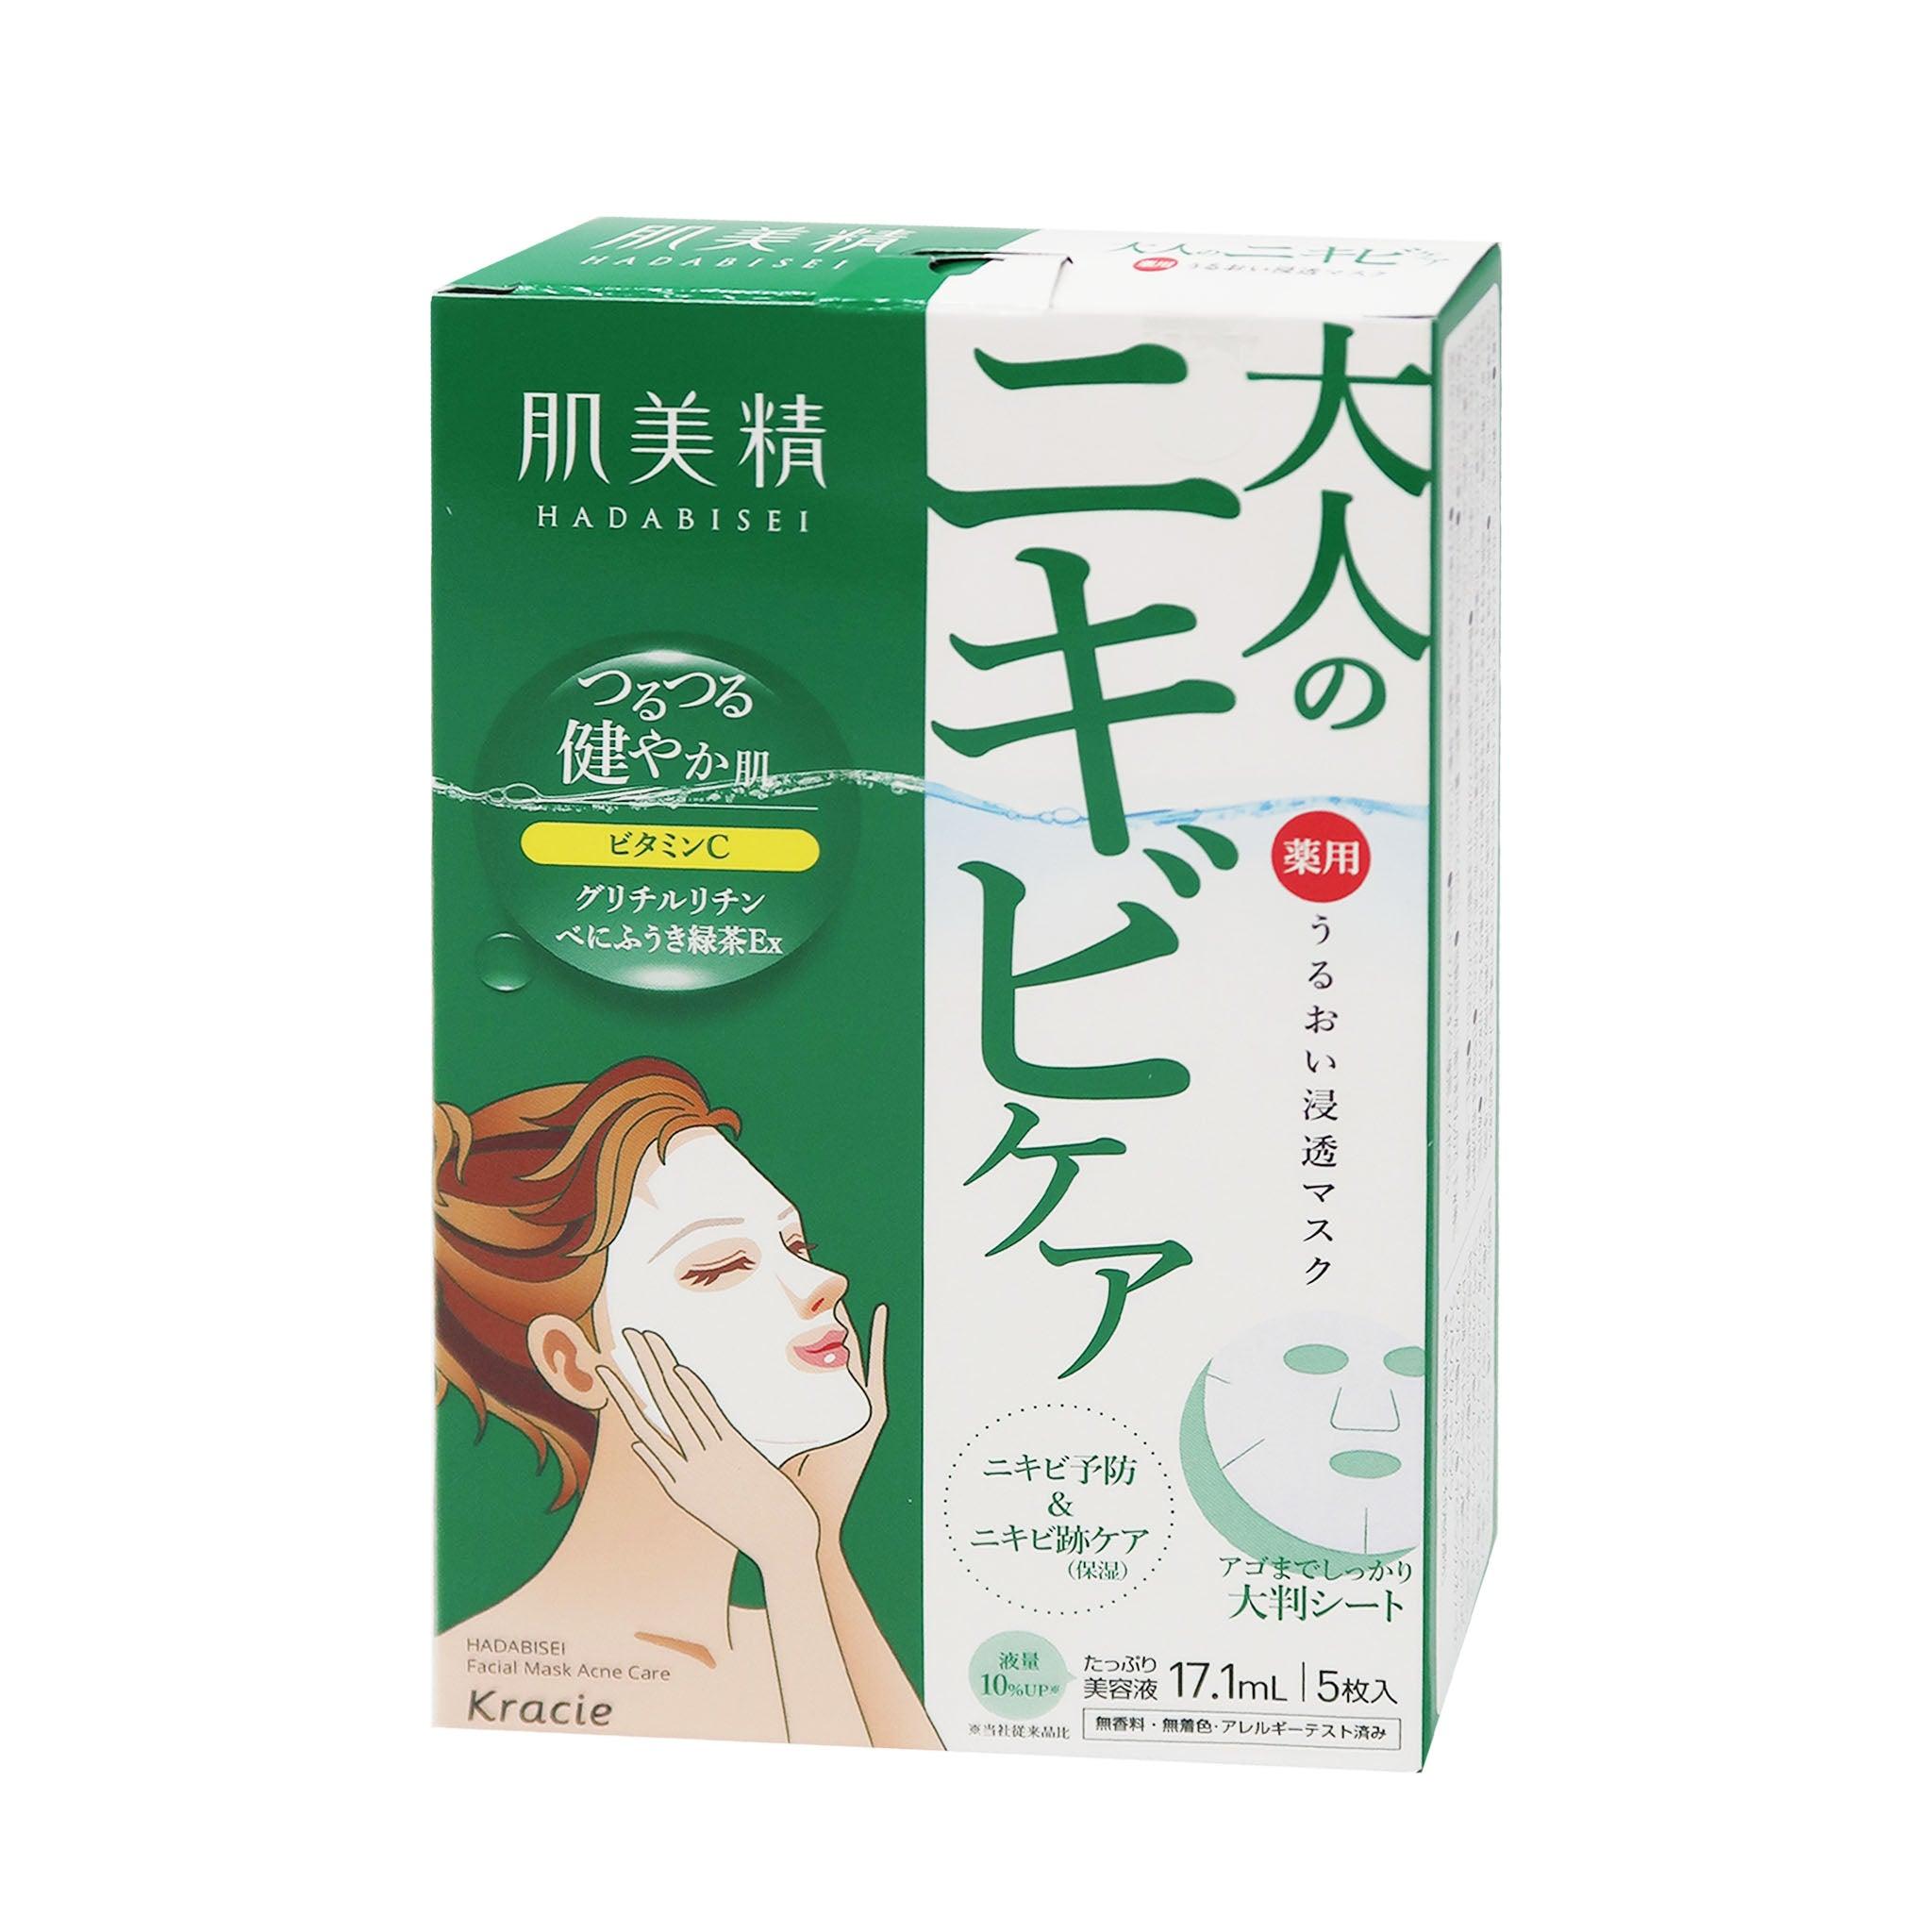 KRACIE HADABISEI Face Mask - Acne Care [5PC]